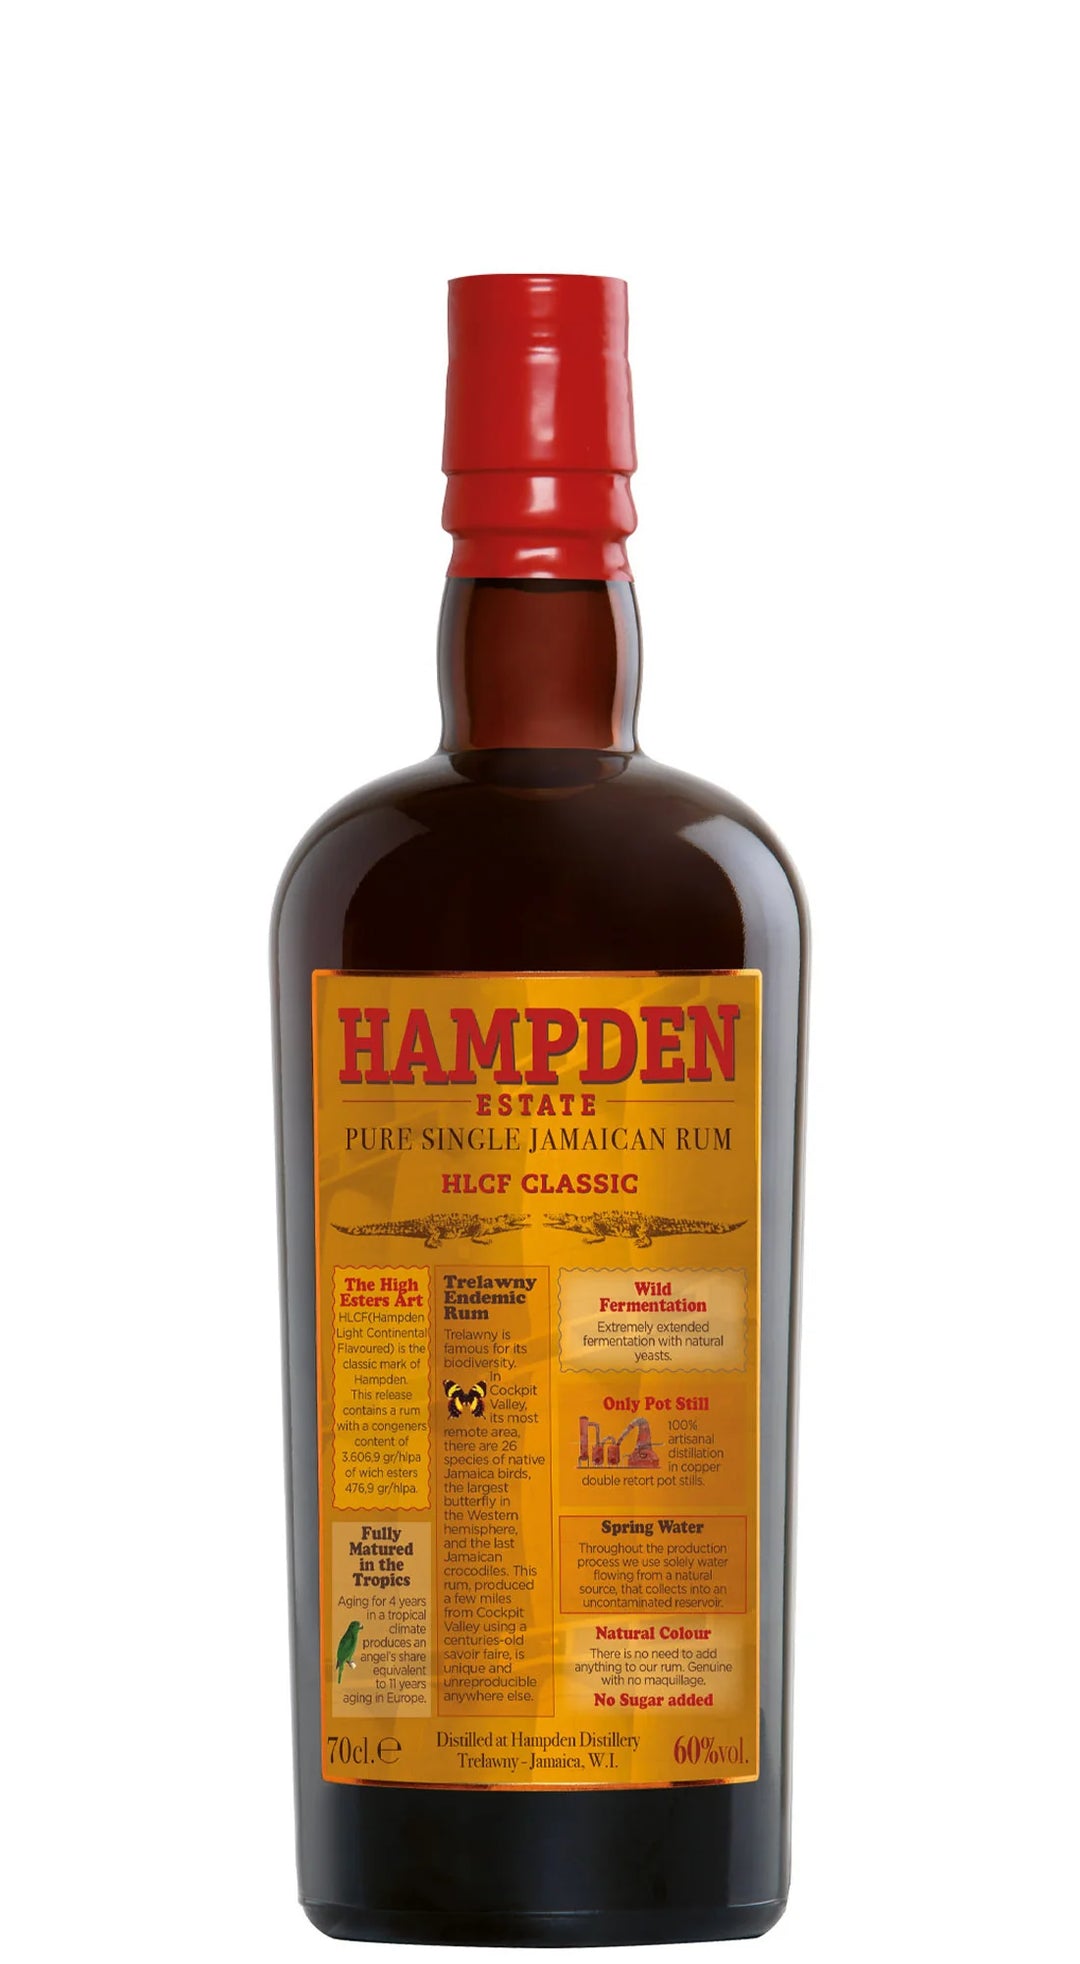 Hampden HLCF Classic Rum